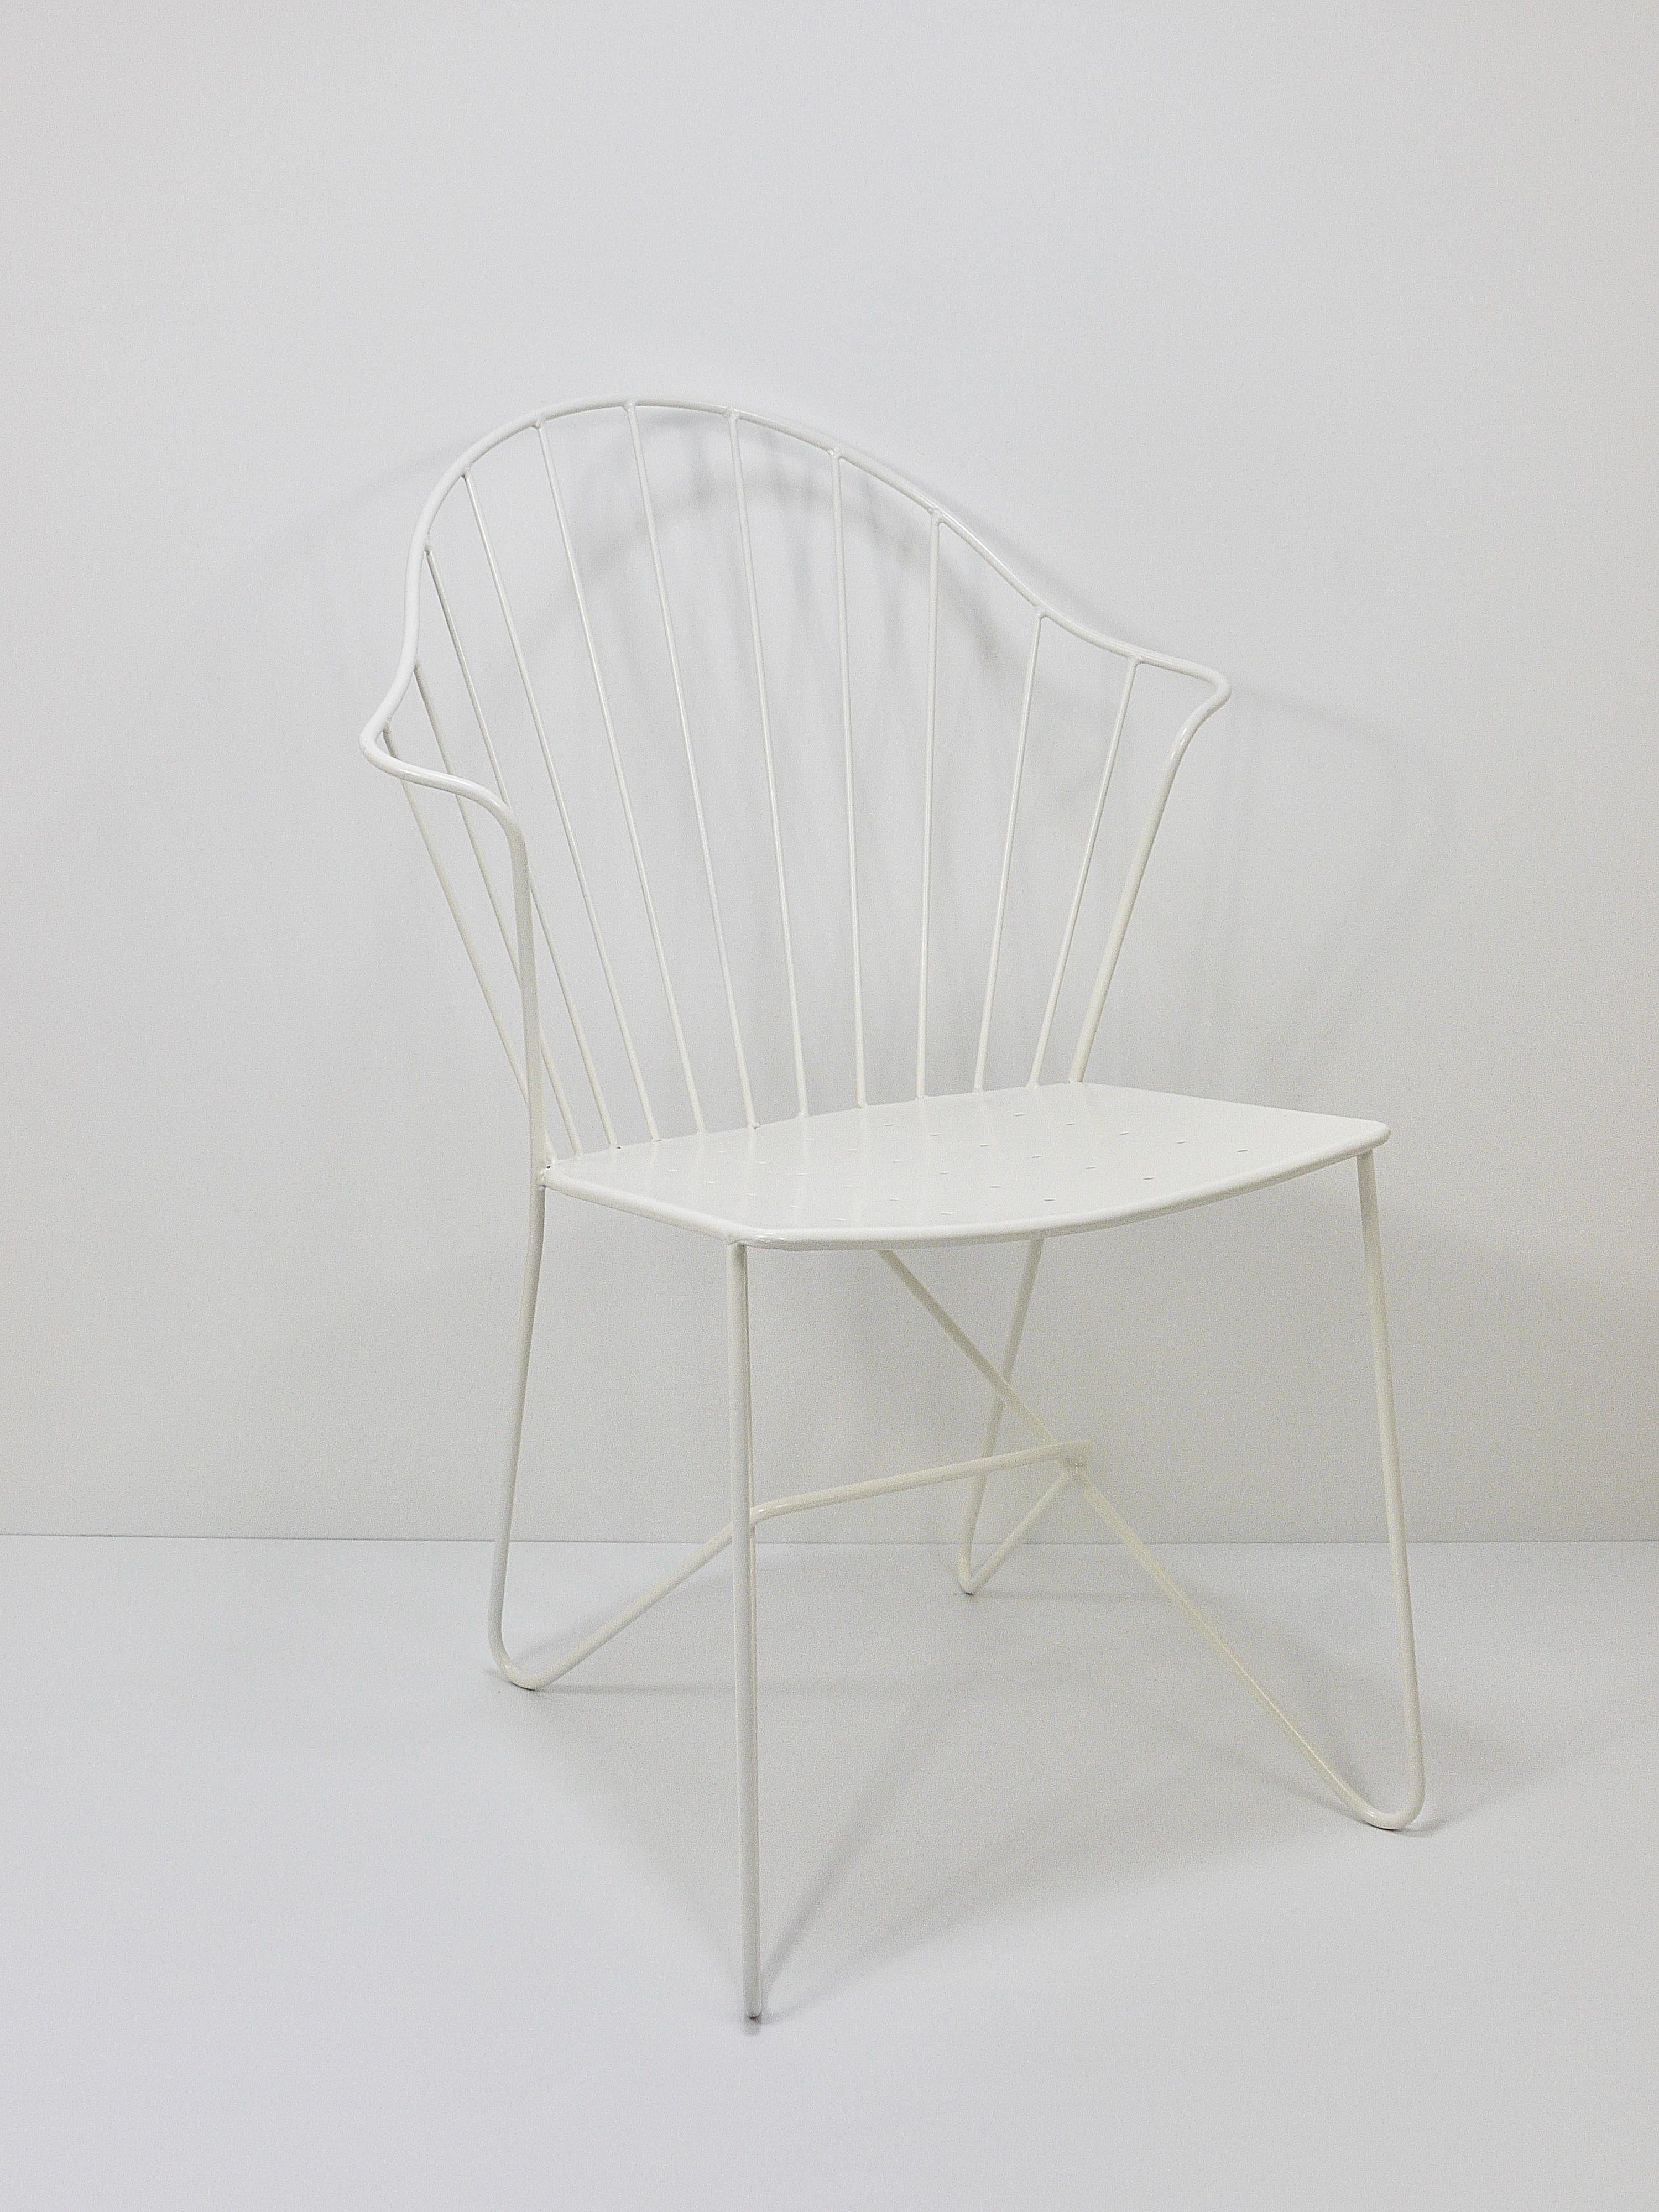 Lacquered Sonett Astoria Auersperg Midcentury Wire Chair, Karl Fostel, Austria, 1950s For Sale